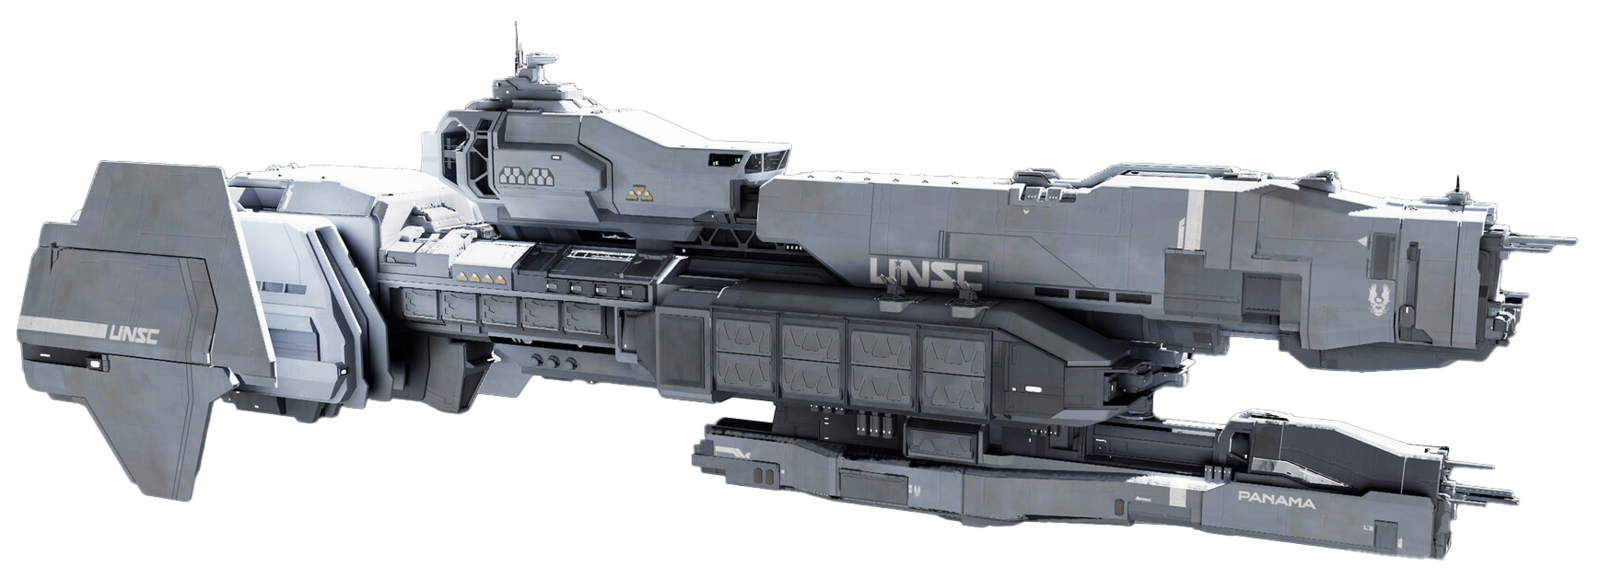 【HALO艦船百科】穆爾桑級輕型護衛艦 —— UNSC新時代星艦的代表作-第4張